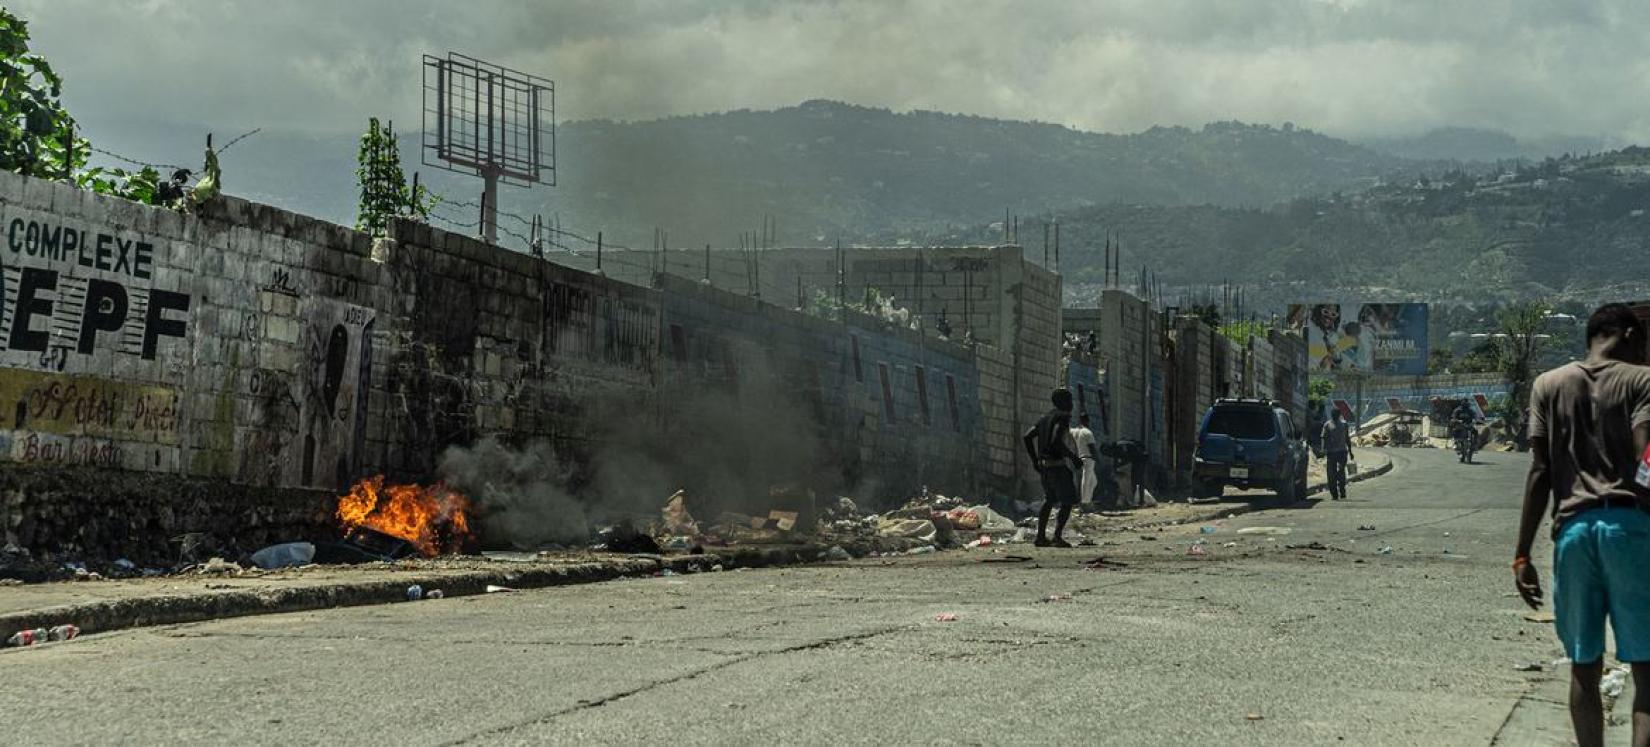 Des feux embrasent une rue de Cité-Soleil, dans l'aire urbaine de Port-au-Prince.